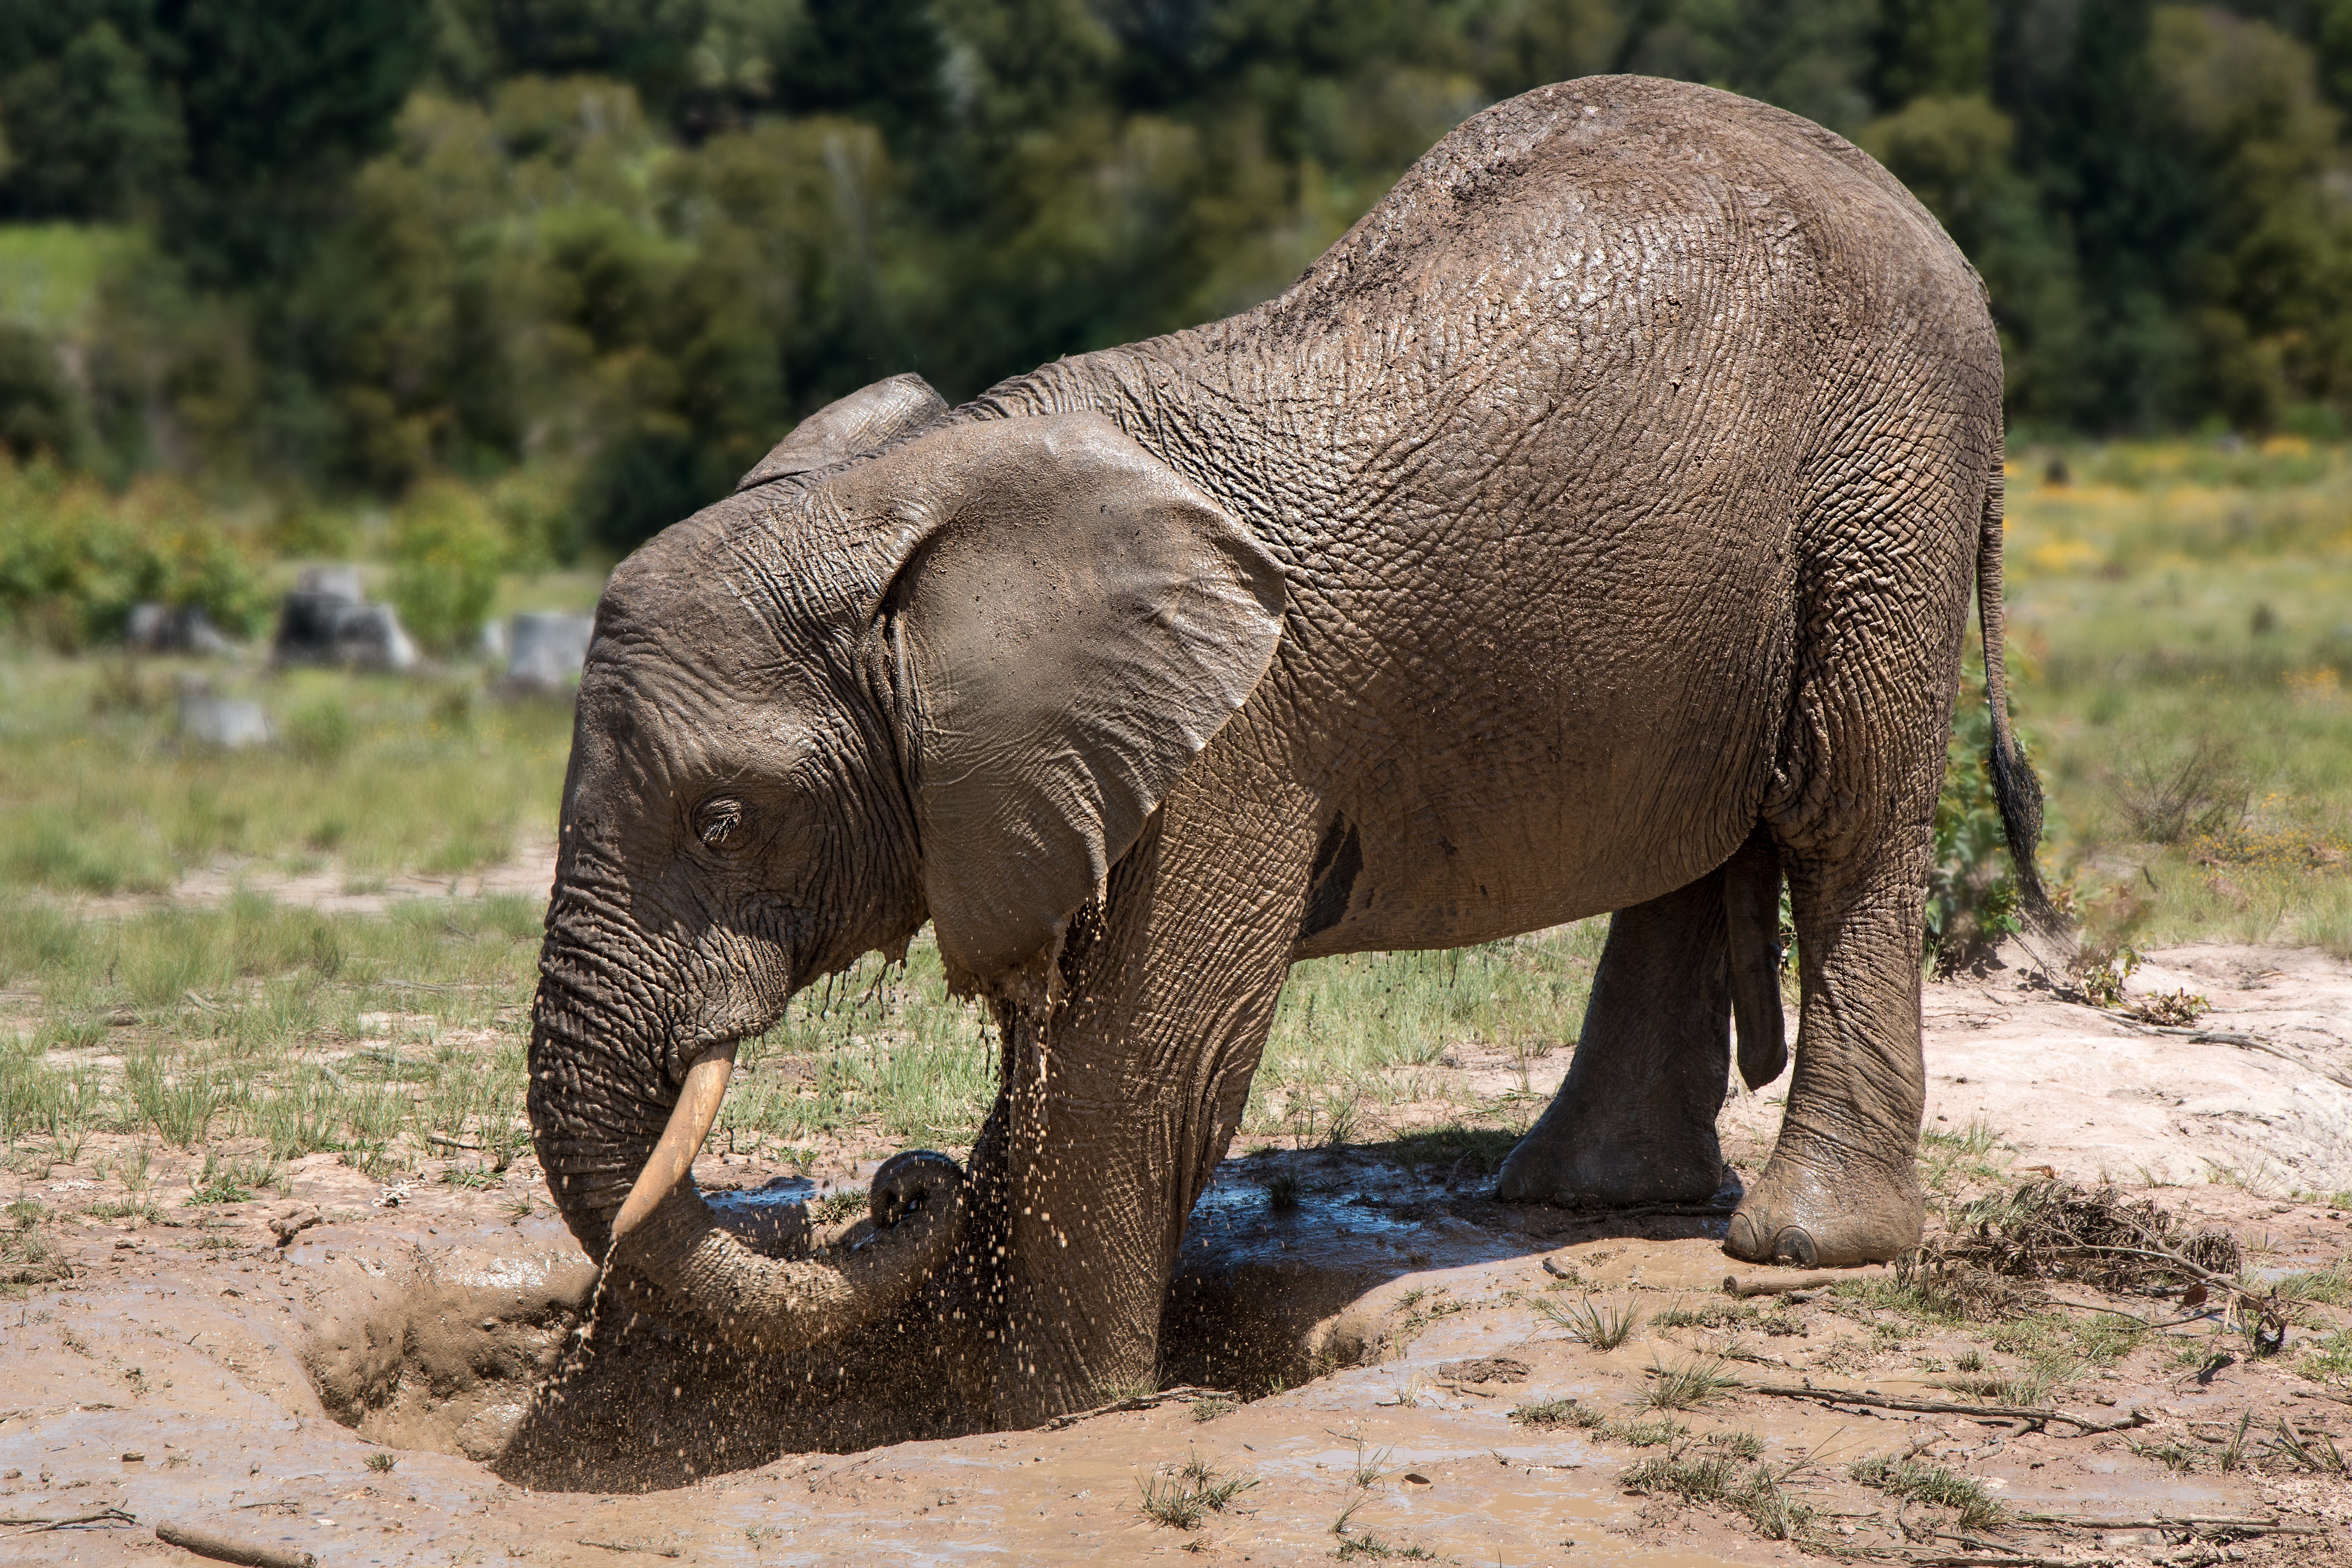 The elephant is taking a mud bath